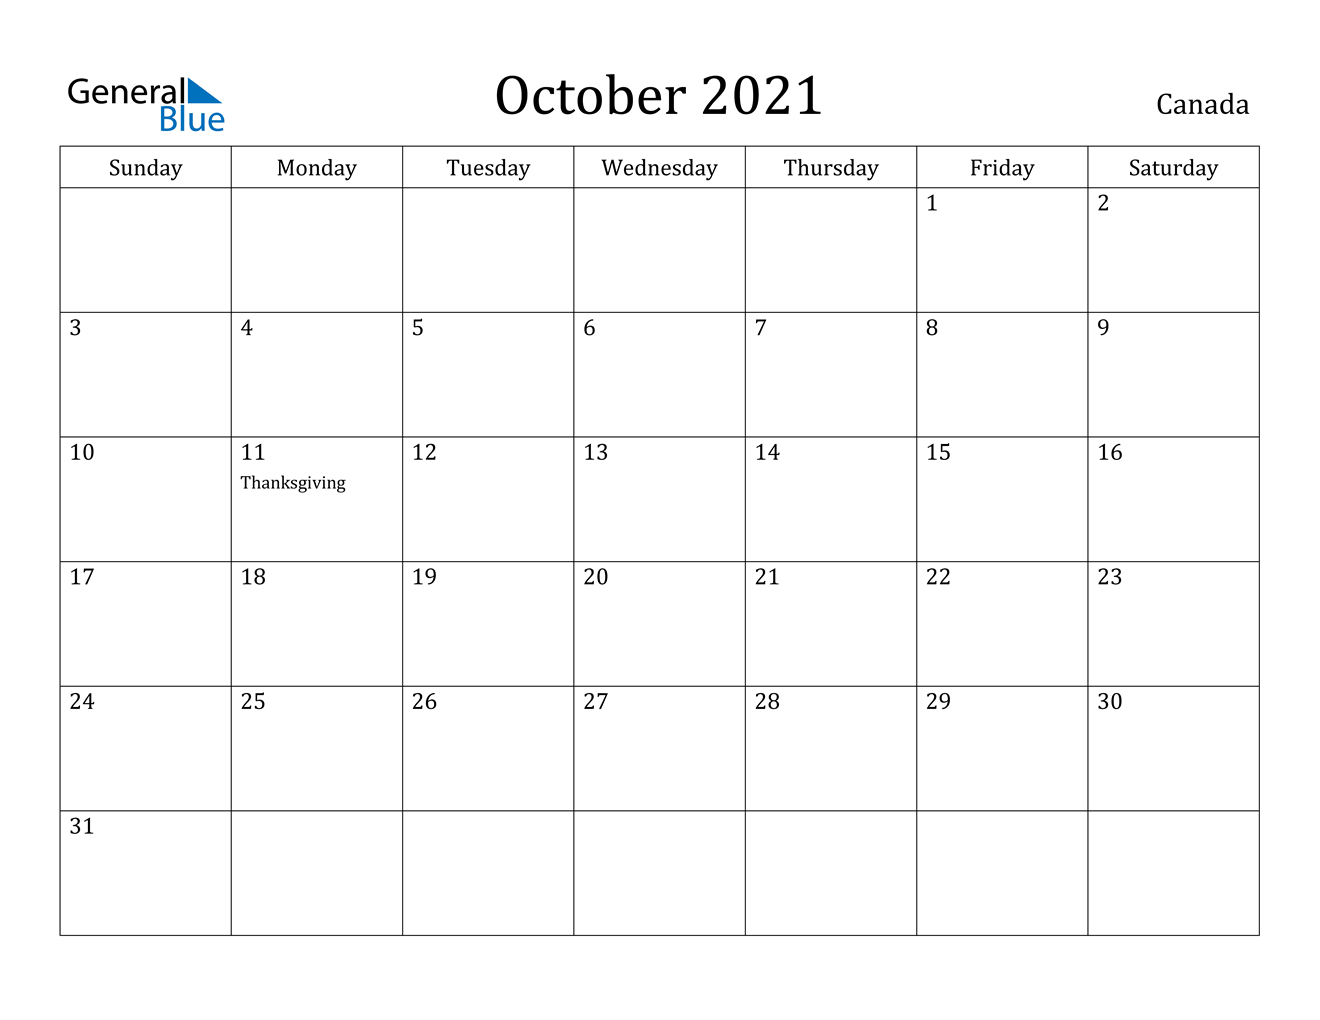 October 2021 Calendar - Canada